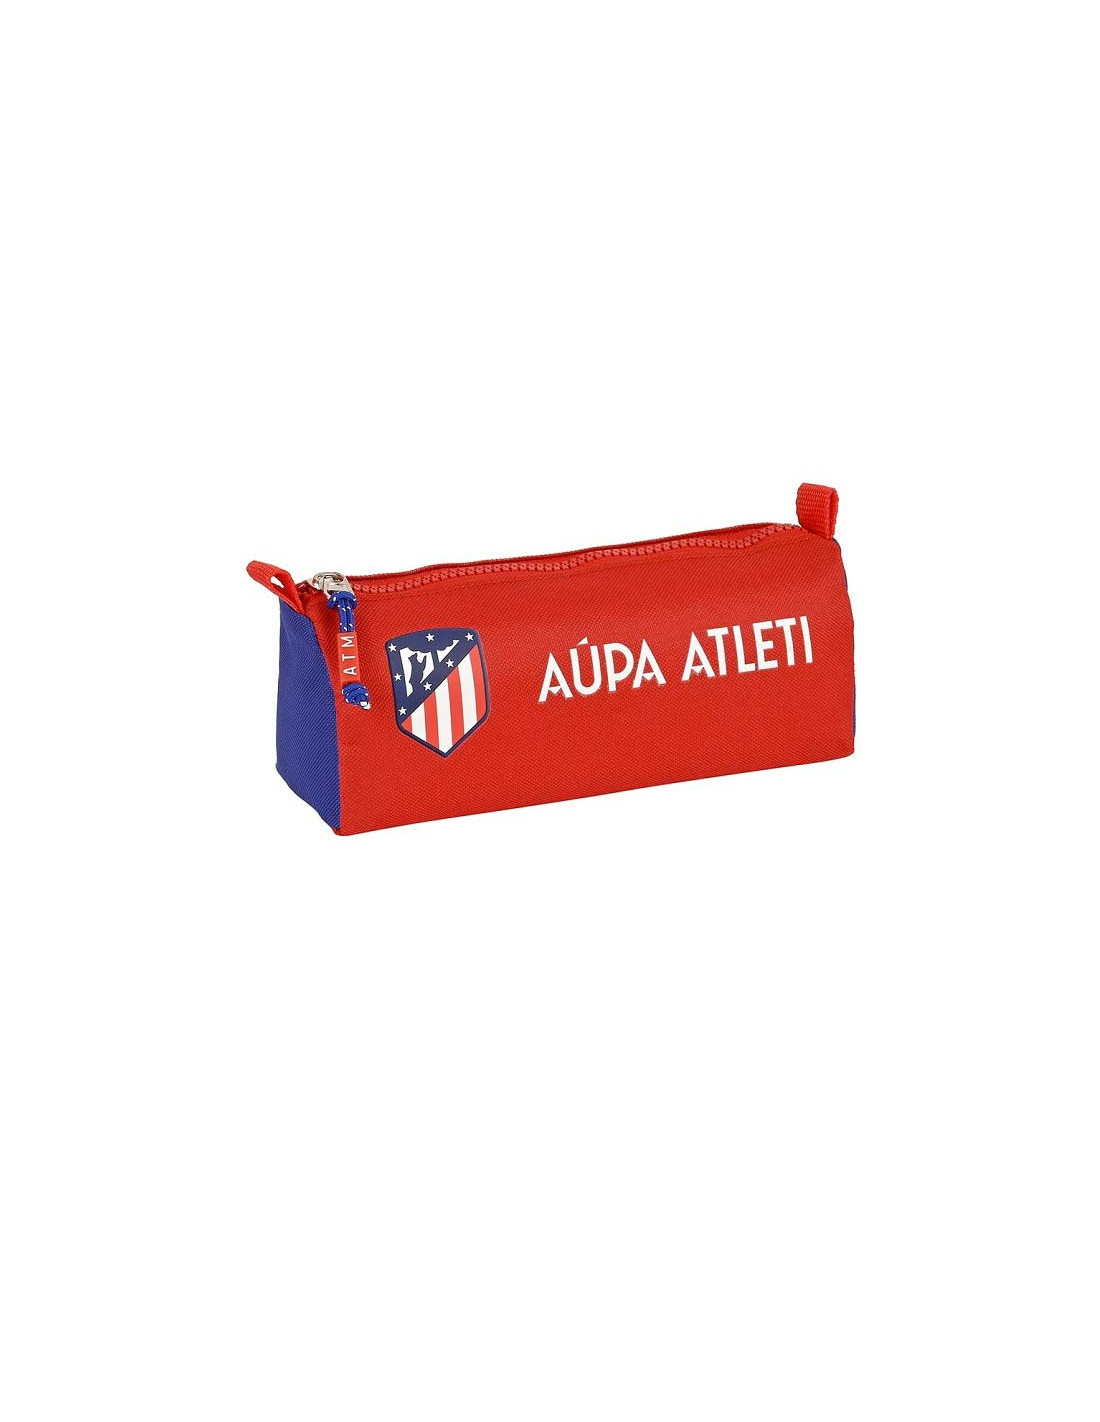 Pulseras, llaveros, lanyards del Atlético de Madrid